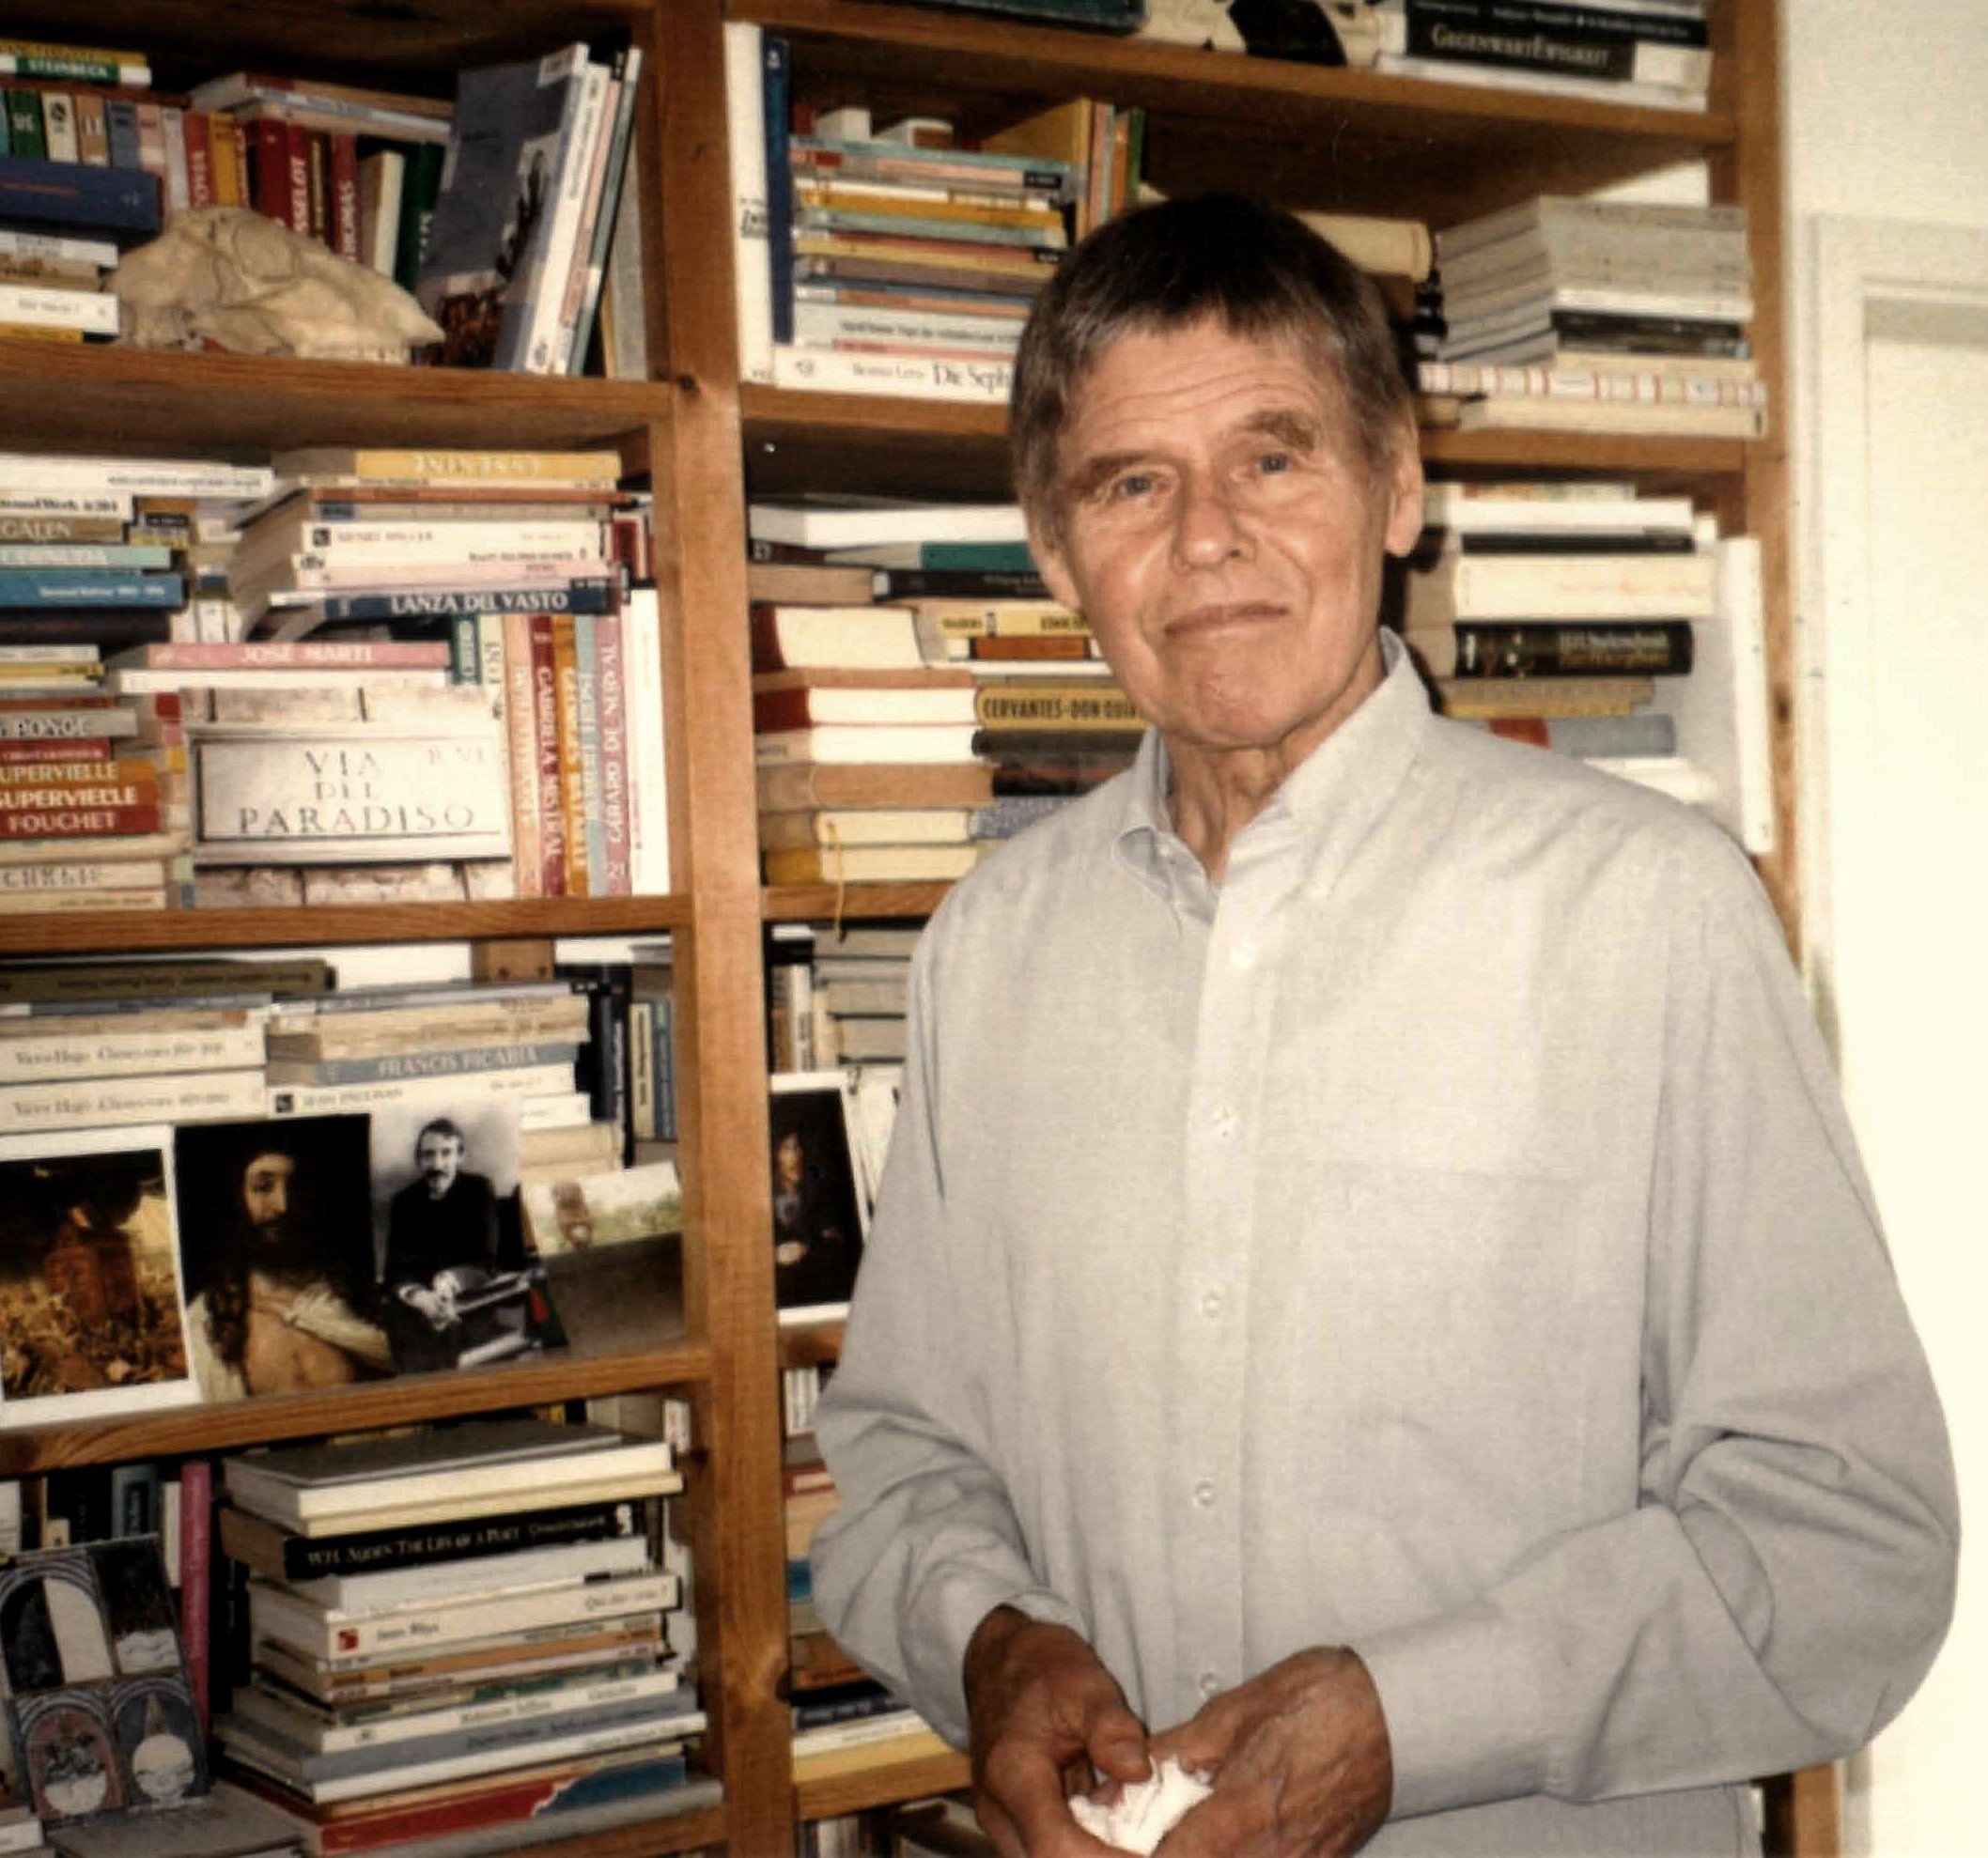 Portrait de l'auteur Christoph Meckel. Souriant, celui-ci se tient, au premier plan de l'image, devant une bibliothèque aux rayons surchargés de livres et agrémentés de quelques photographies. 